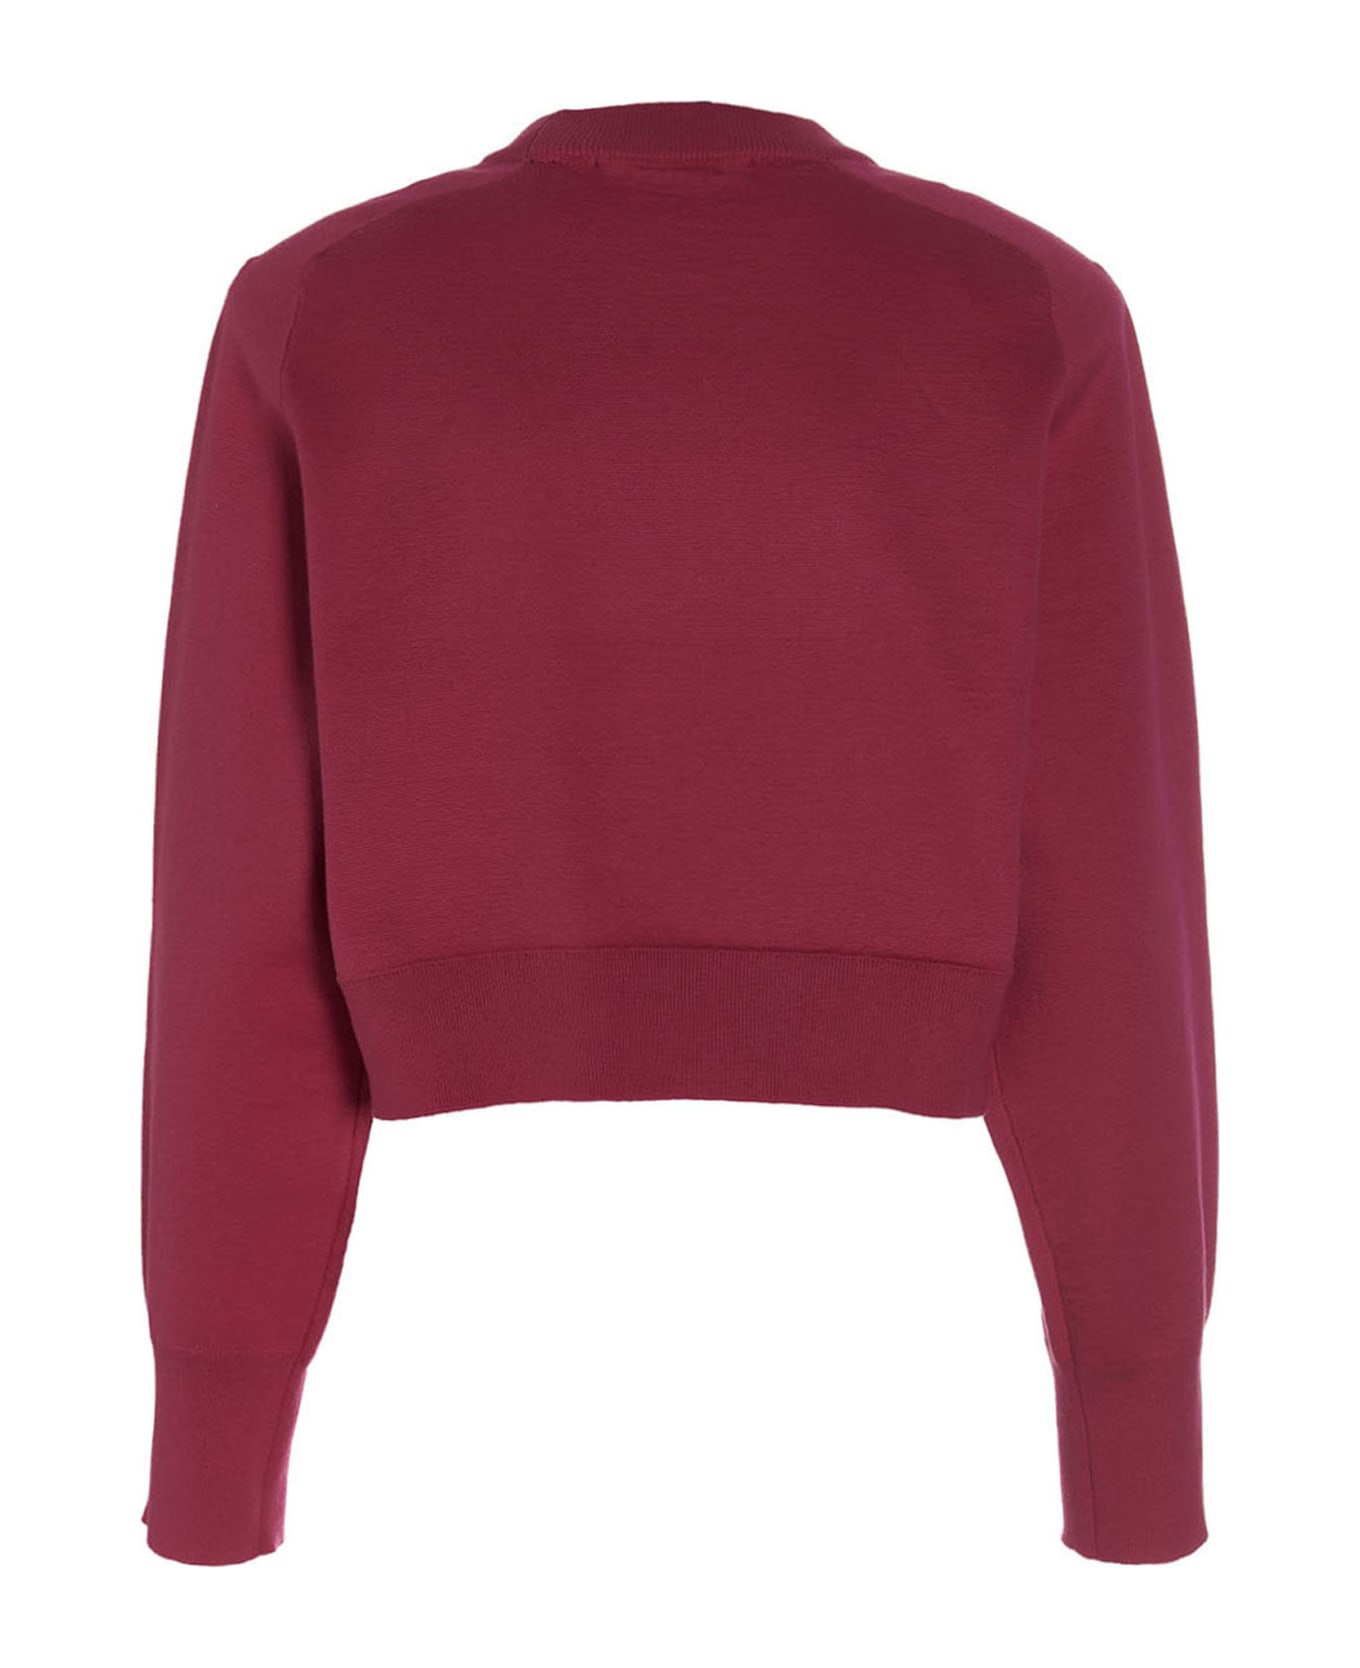 Rotate by Birger Christensen 'firm Rhinestone' Sweatshirt - Pink Glo